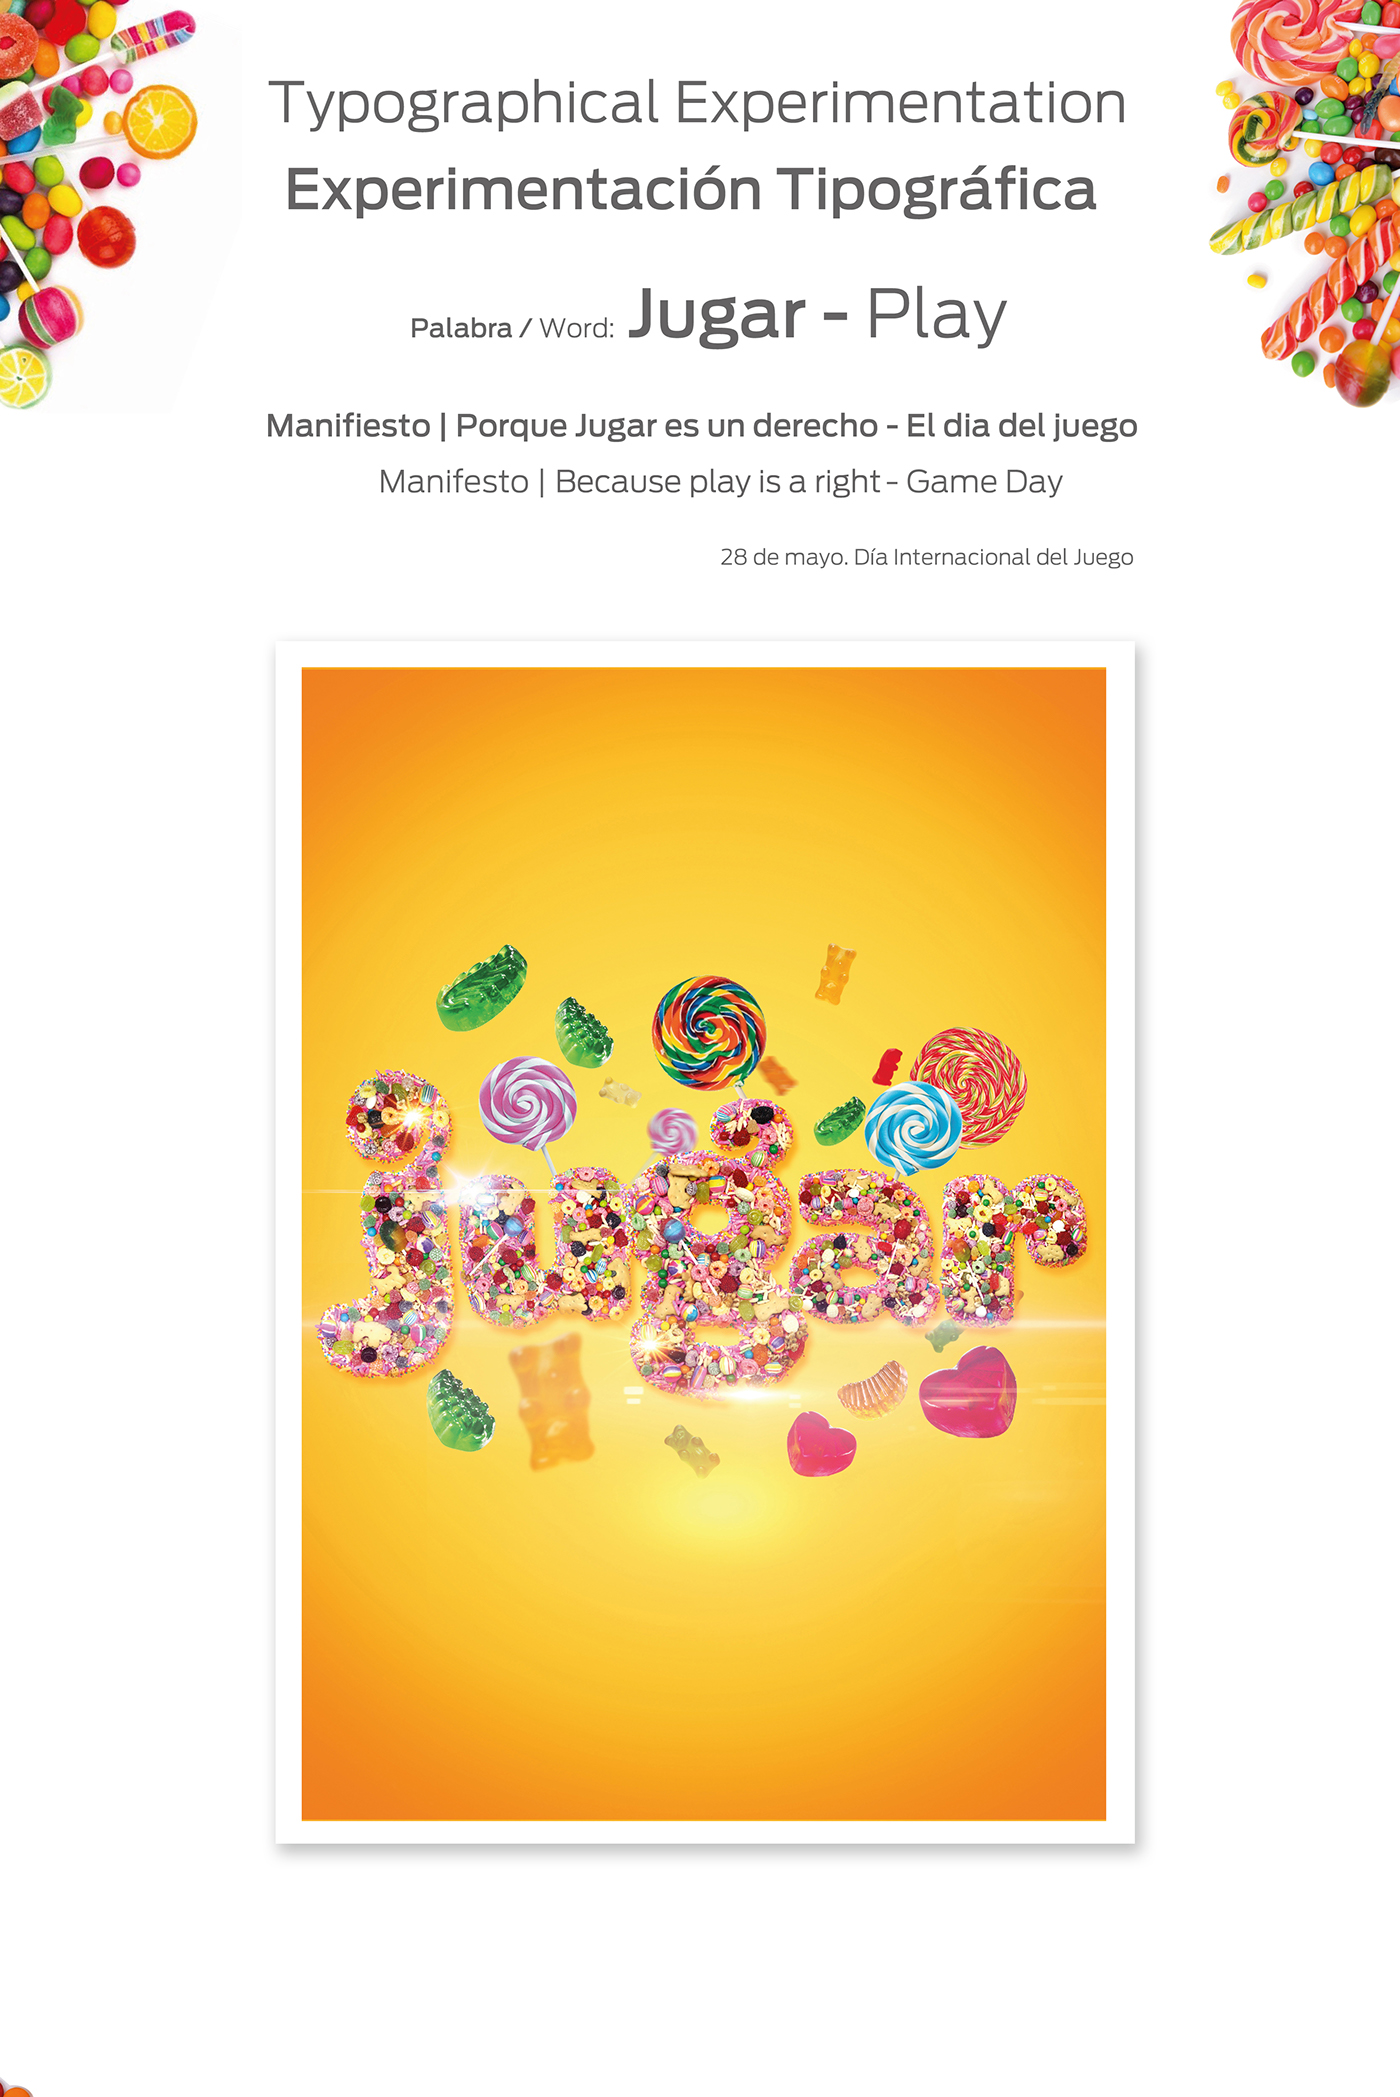 candy font caramelos font caremelos dulces fuente tipografica tipografia jugar play candy play Manifiesto | Porque Jugar es un dia del juego Manifesto | Why